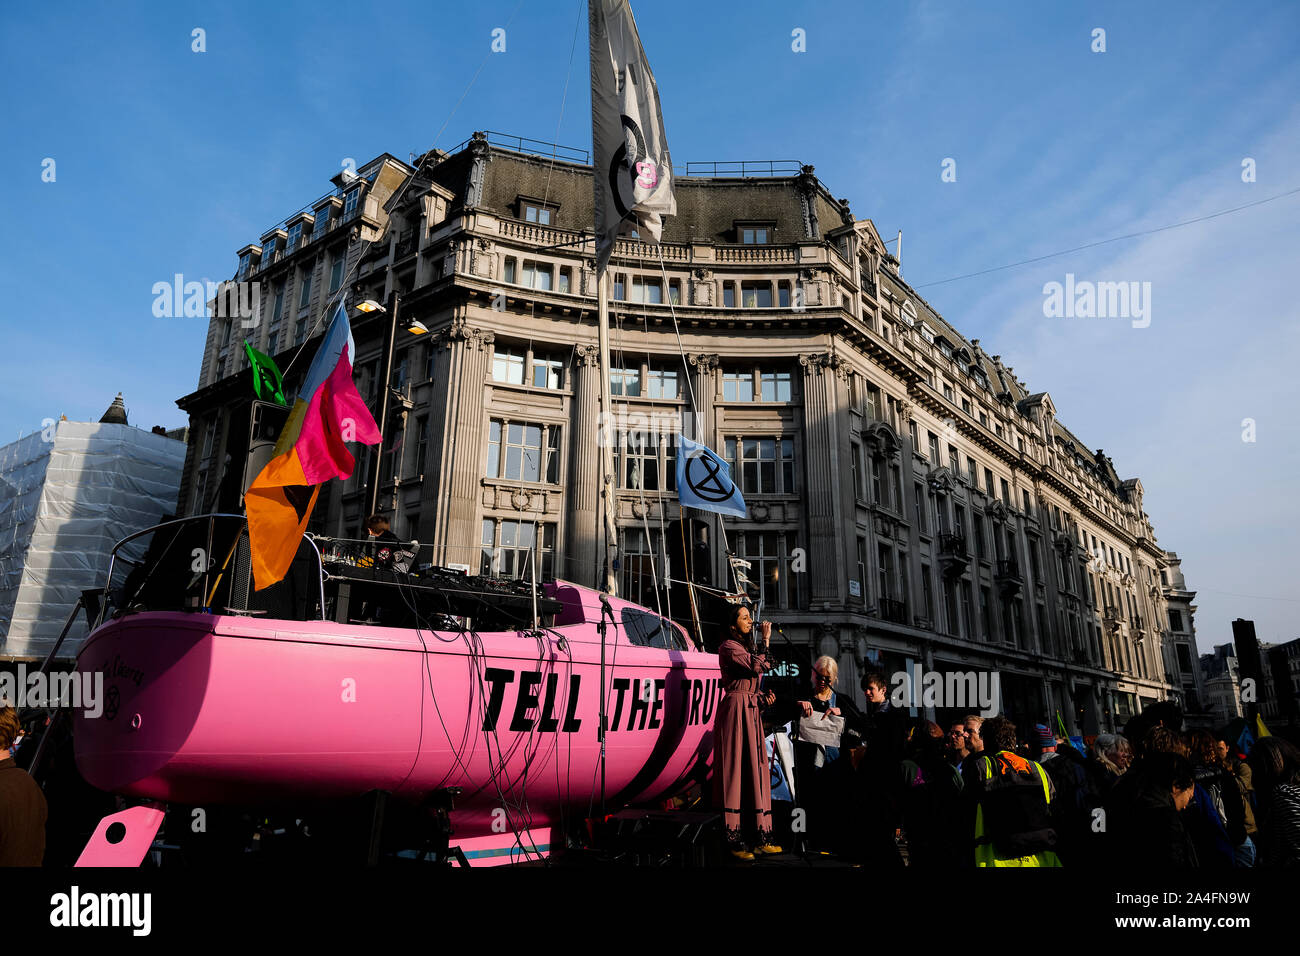 Londra, Regno Unito. Uno yacht rosa con scritto 'Tell the Truth' si trova nel mezzo di Oxford Circus durante la protesta della ribellione di estinzione. Foto Stock